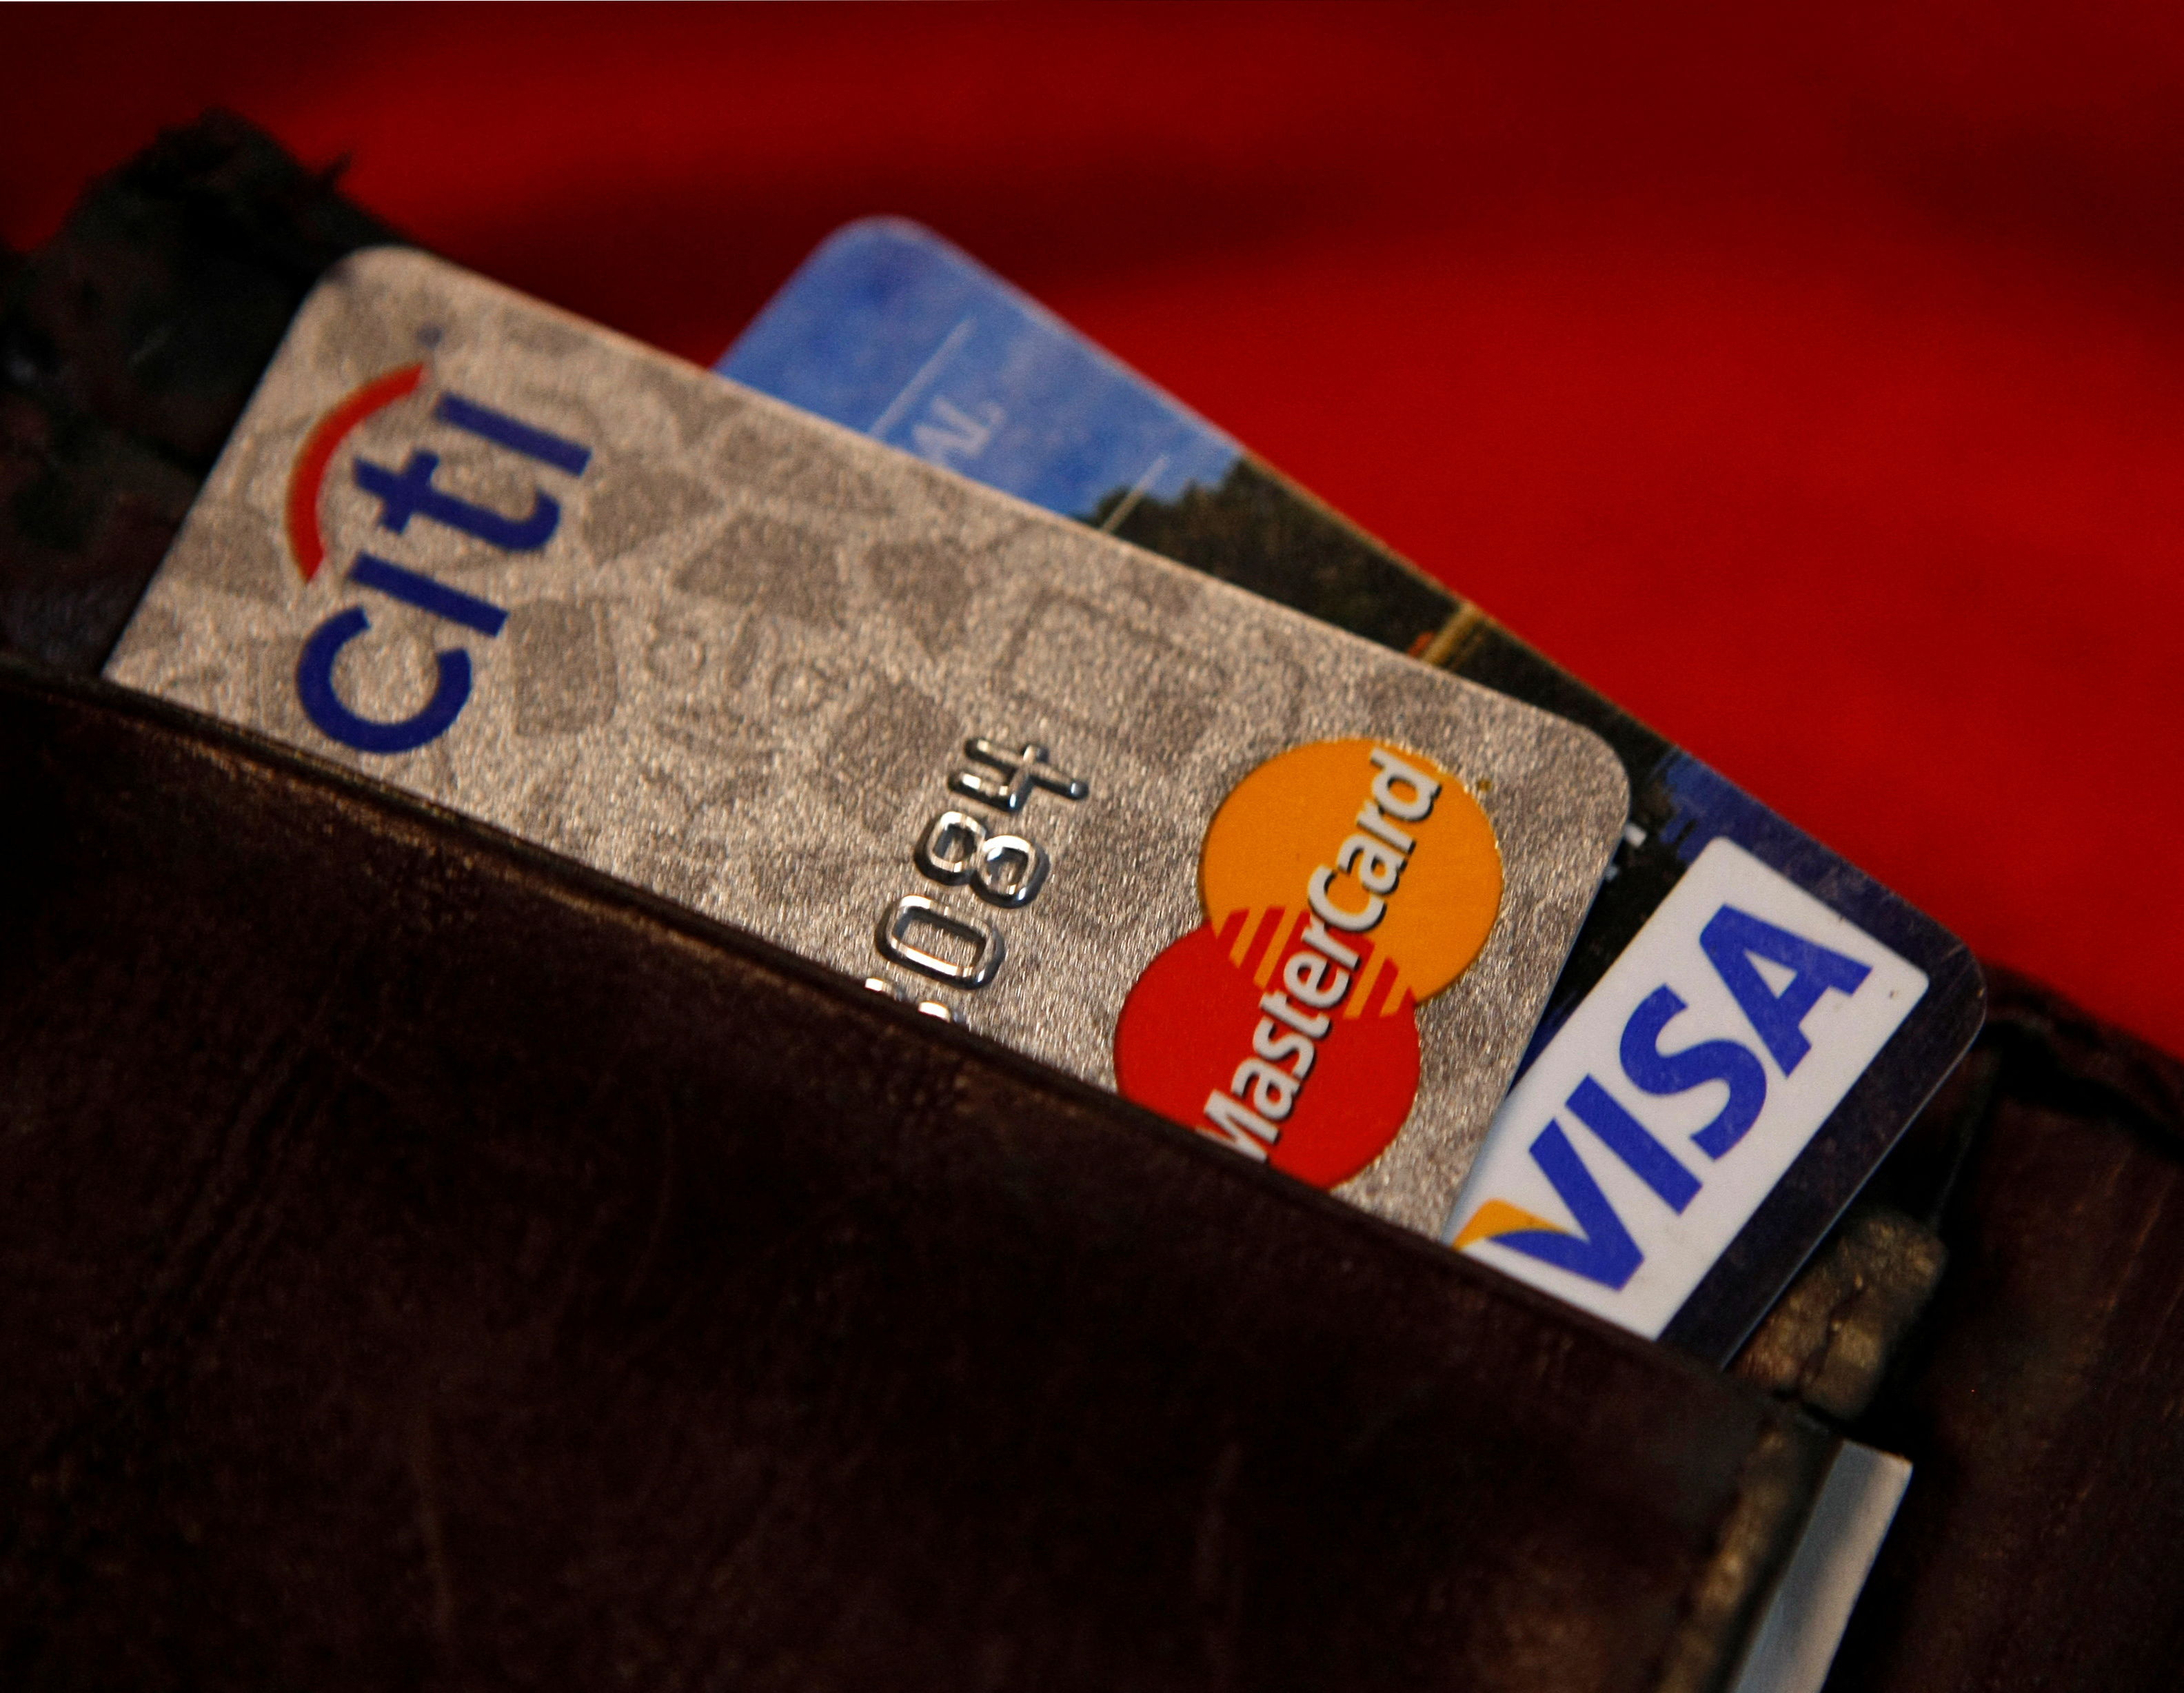 AFIP controla los gastos con tarjeta: cuáles son los montos a partir de los cuales el banco tiene que informar los consumos